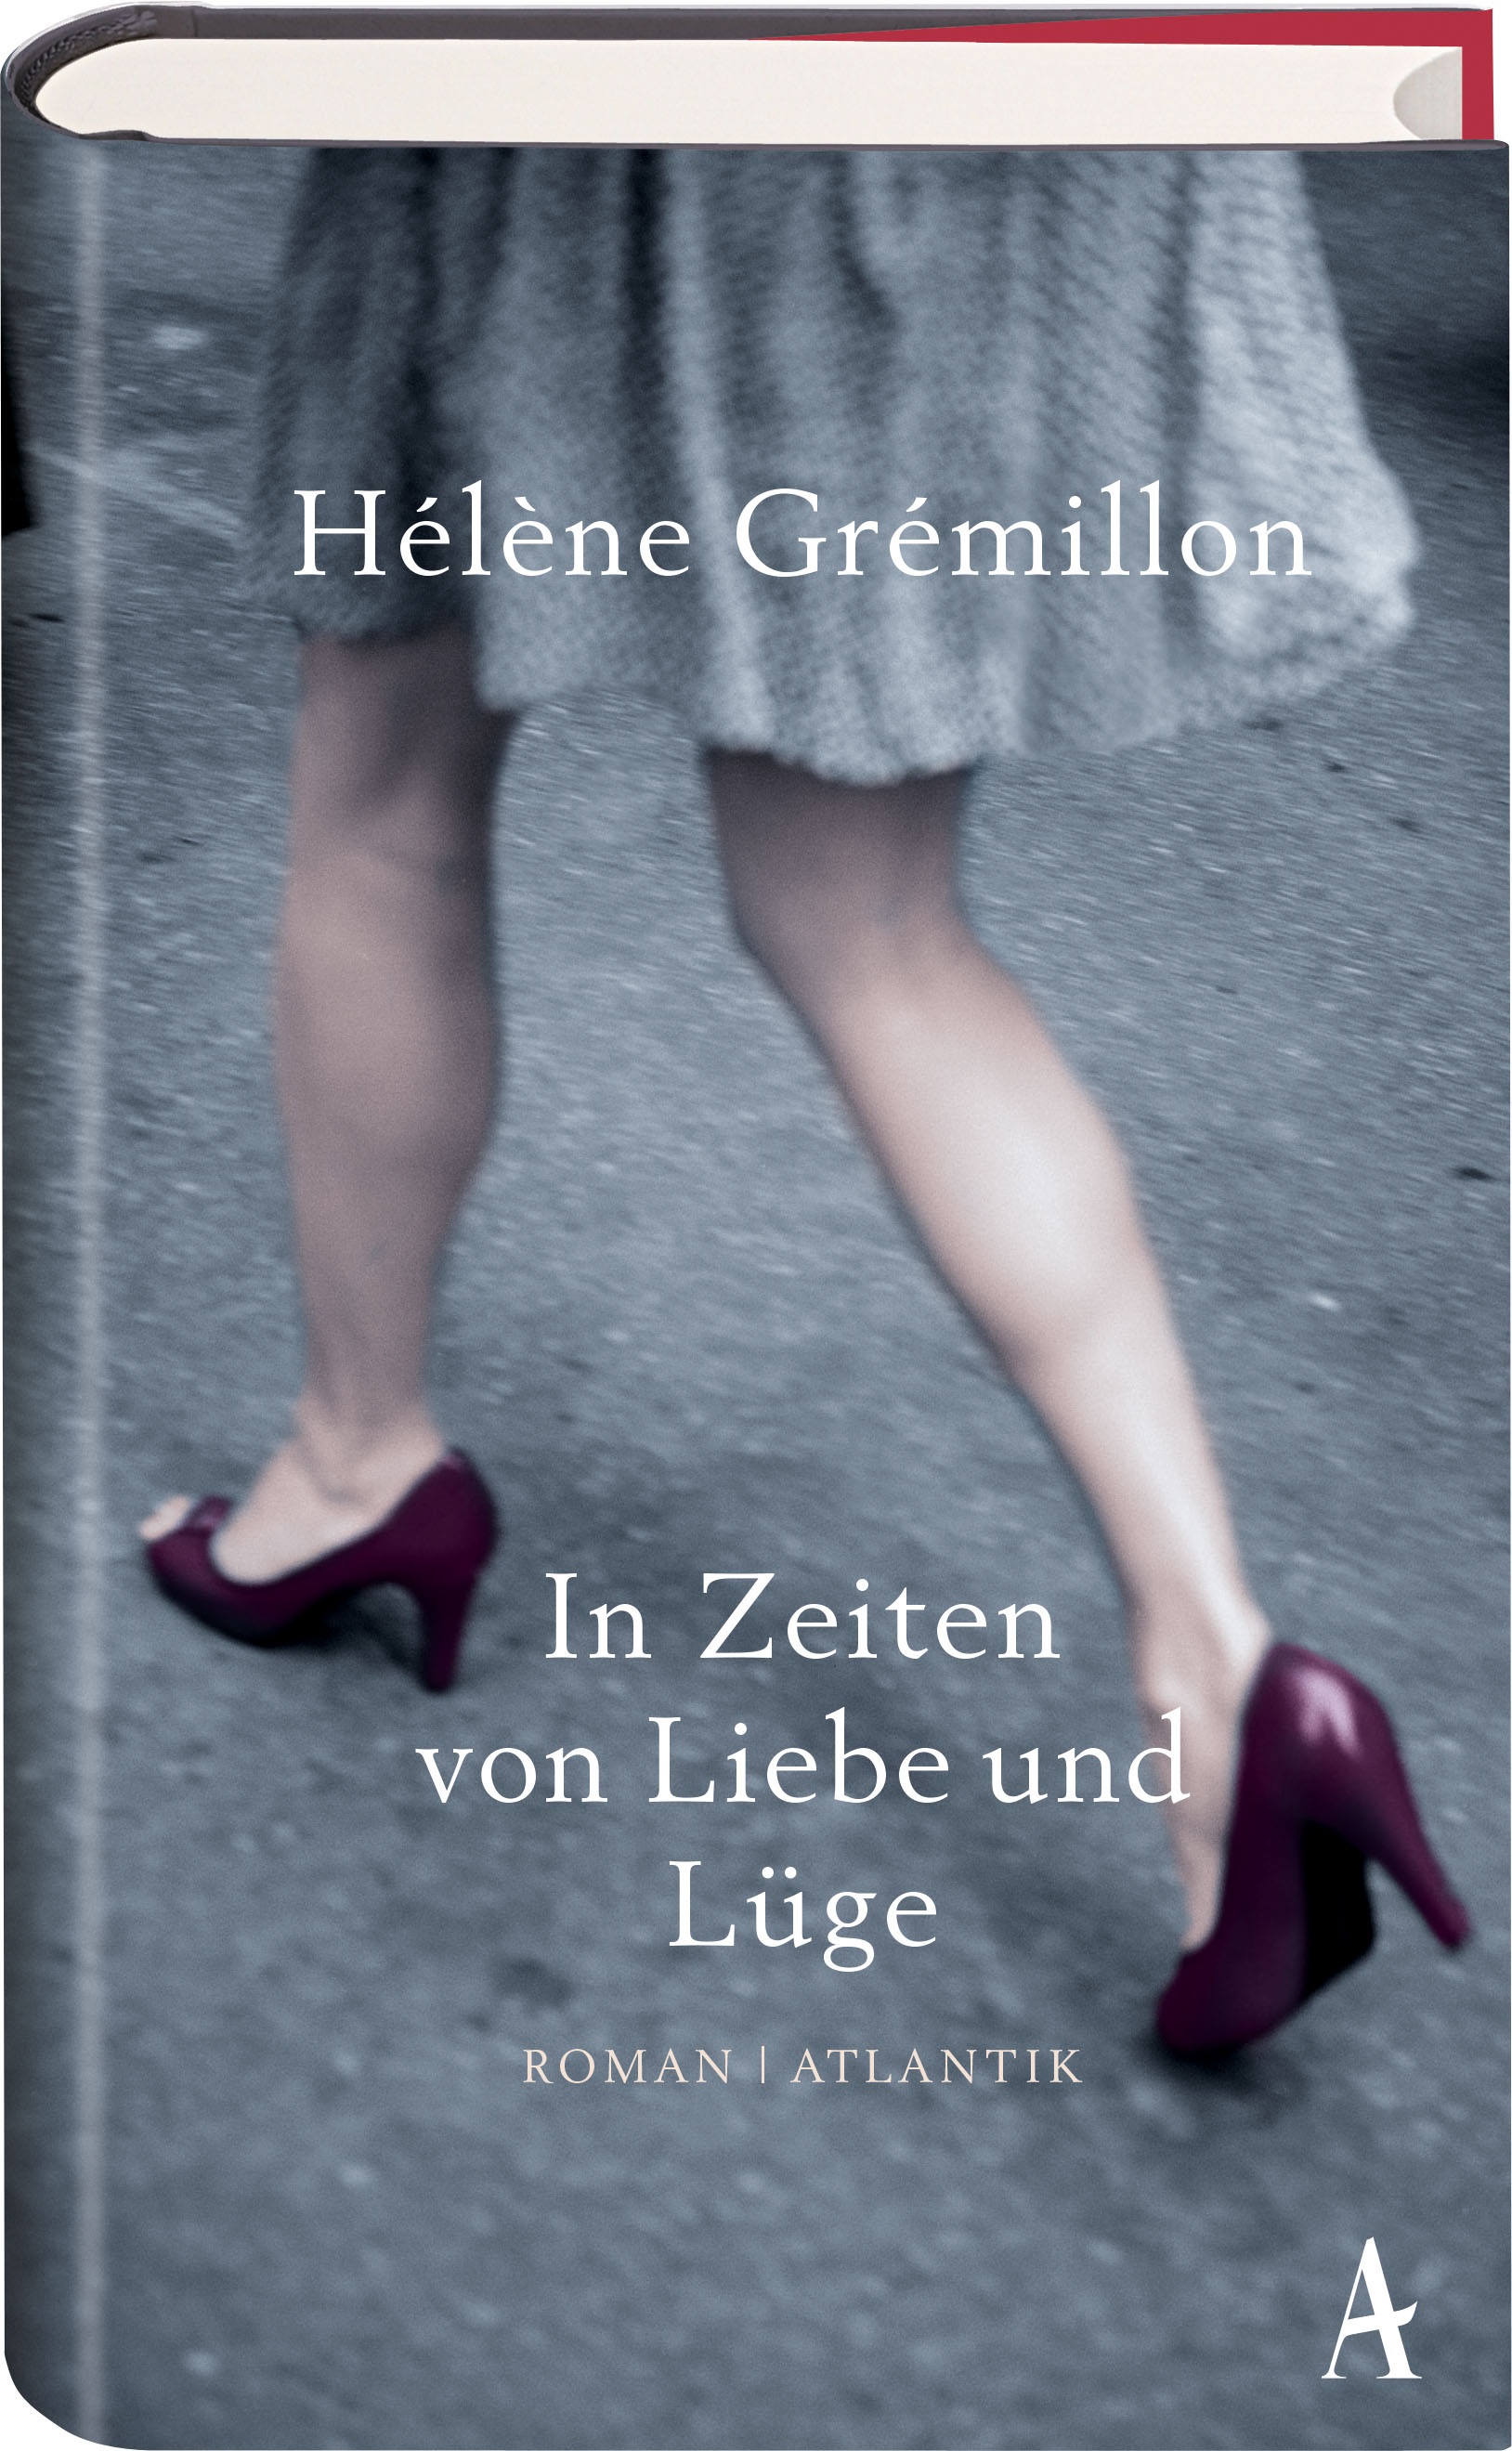 Helene Gremillon - “In Zeiten von Liebe und Lüge”